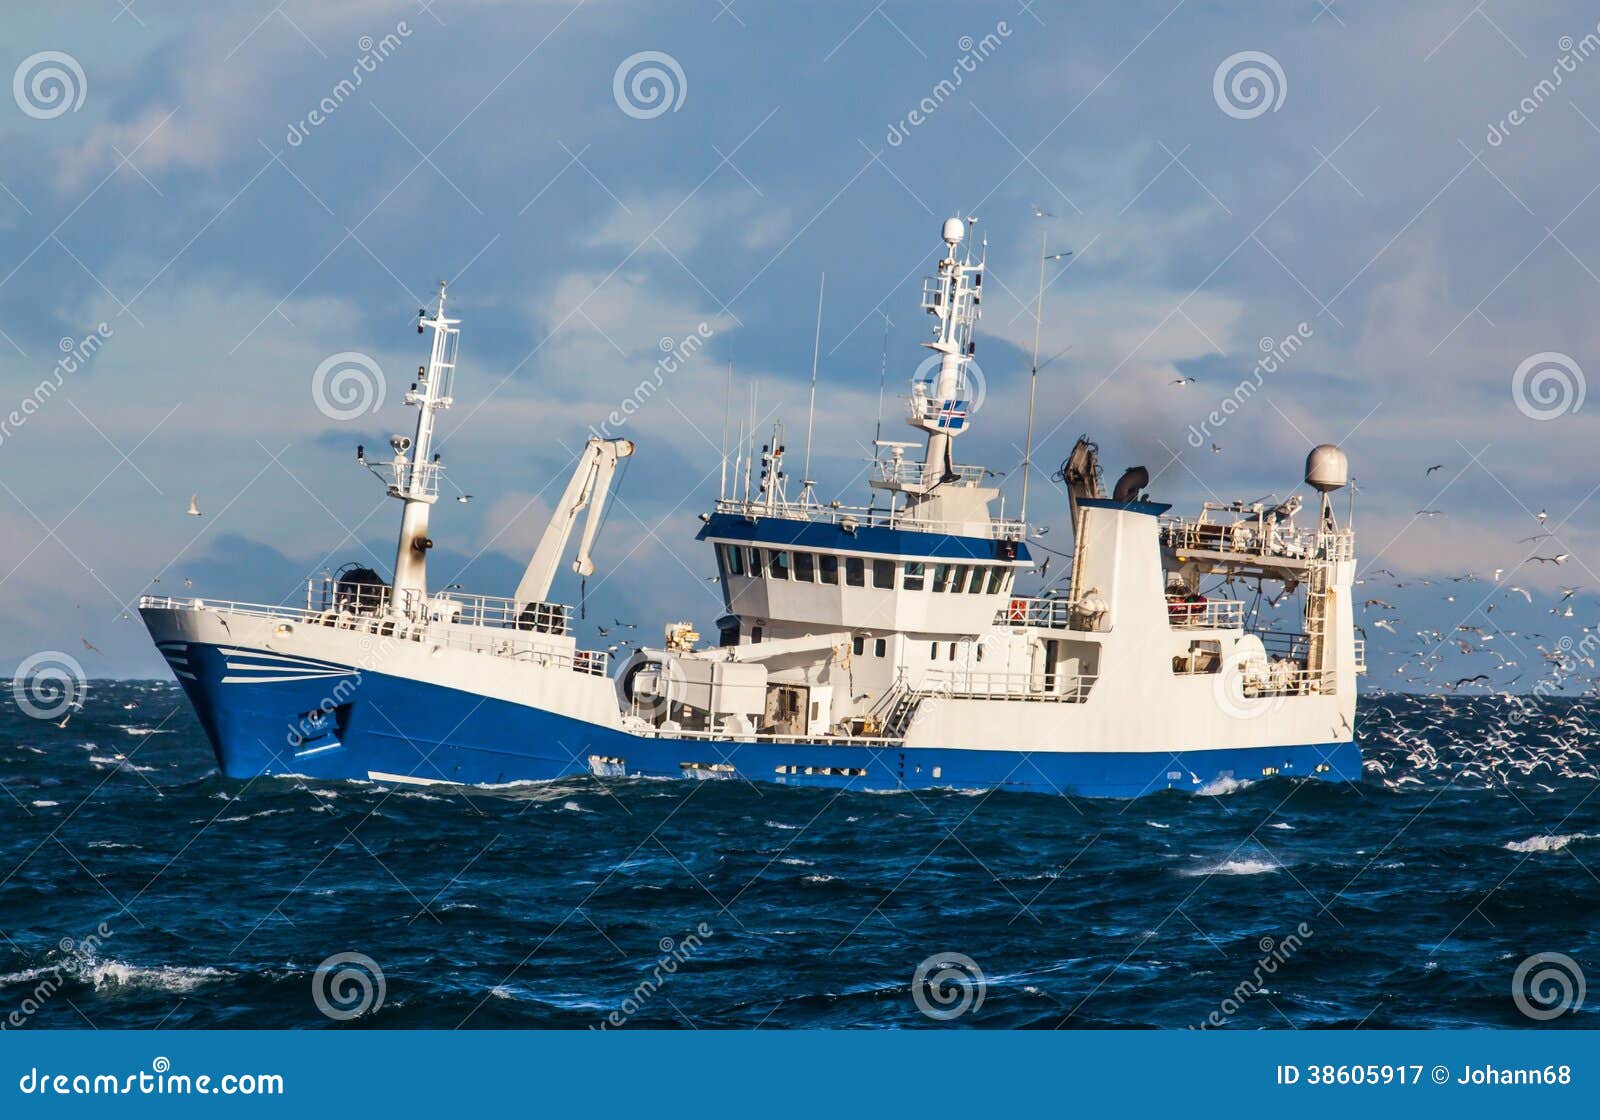 pelagic fishing vessel